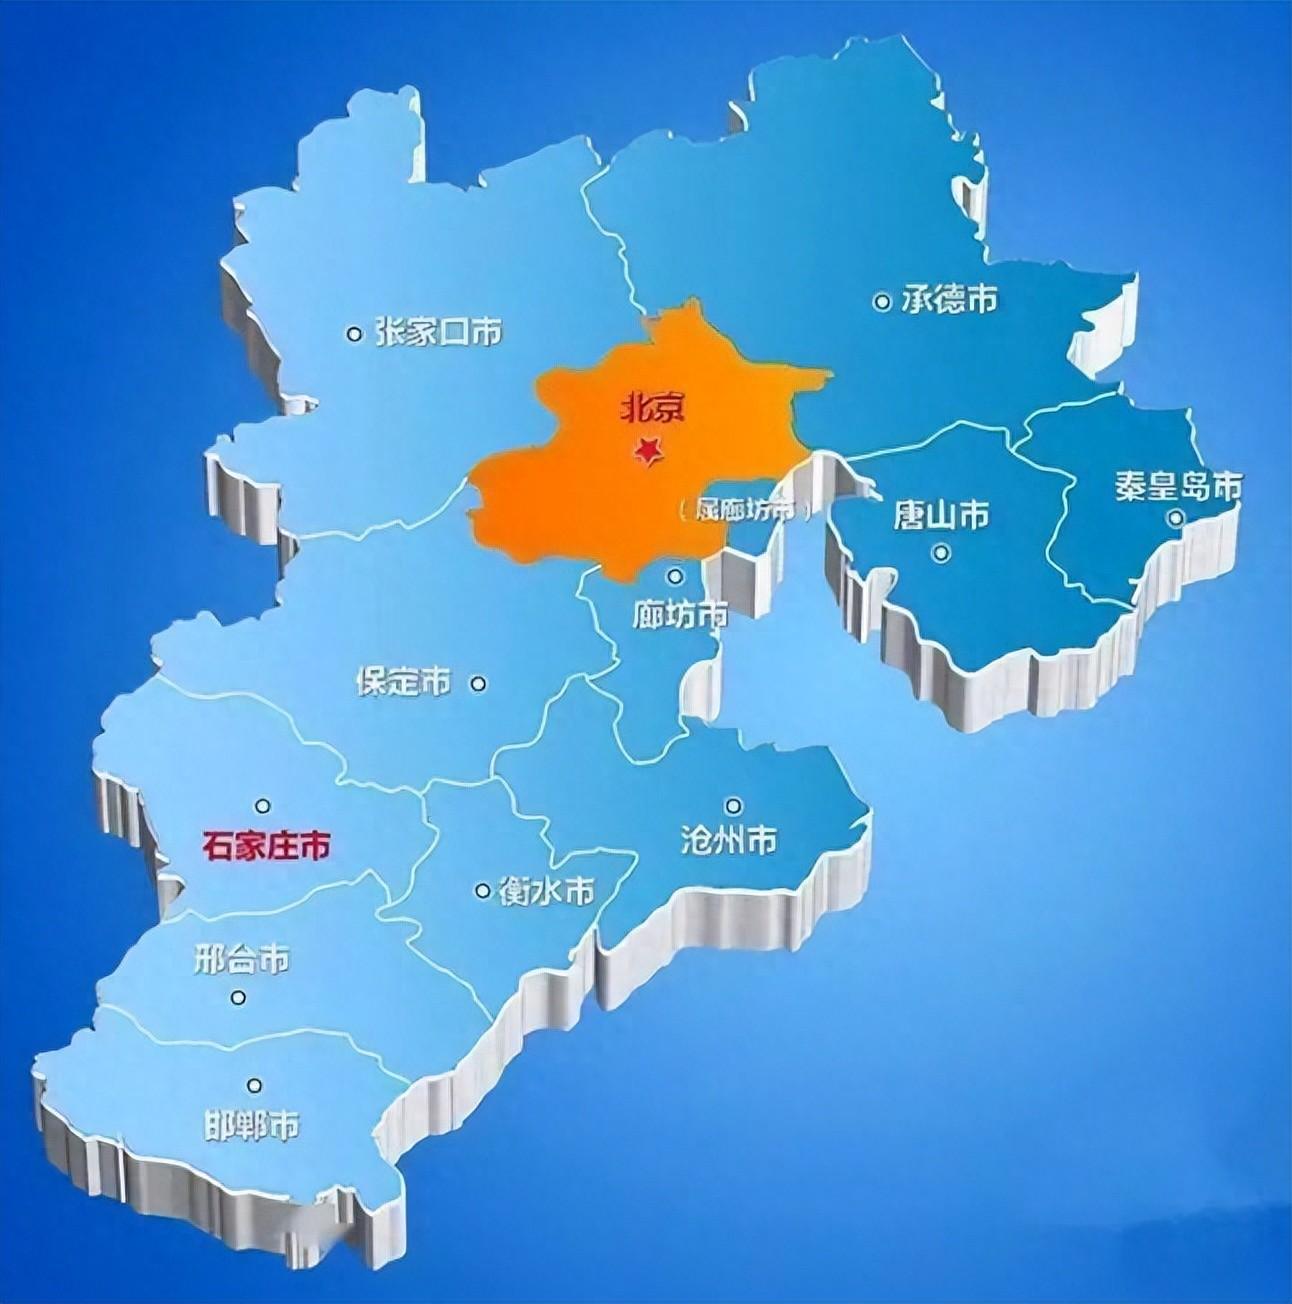 京津区域划分构想：唐山秦皇岛并入北京，沧州并入天津，雄安起飞